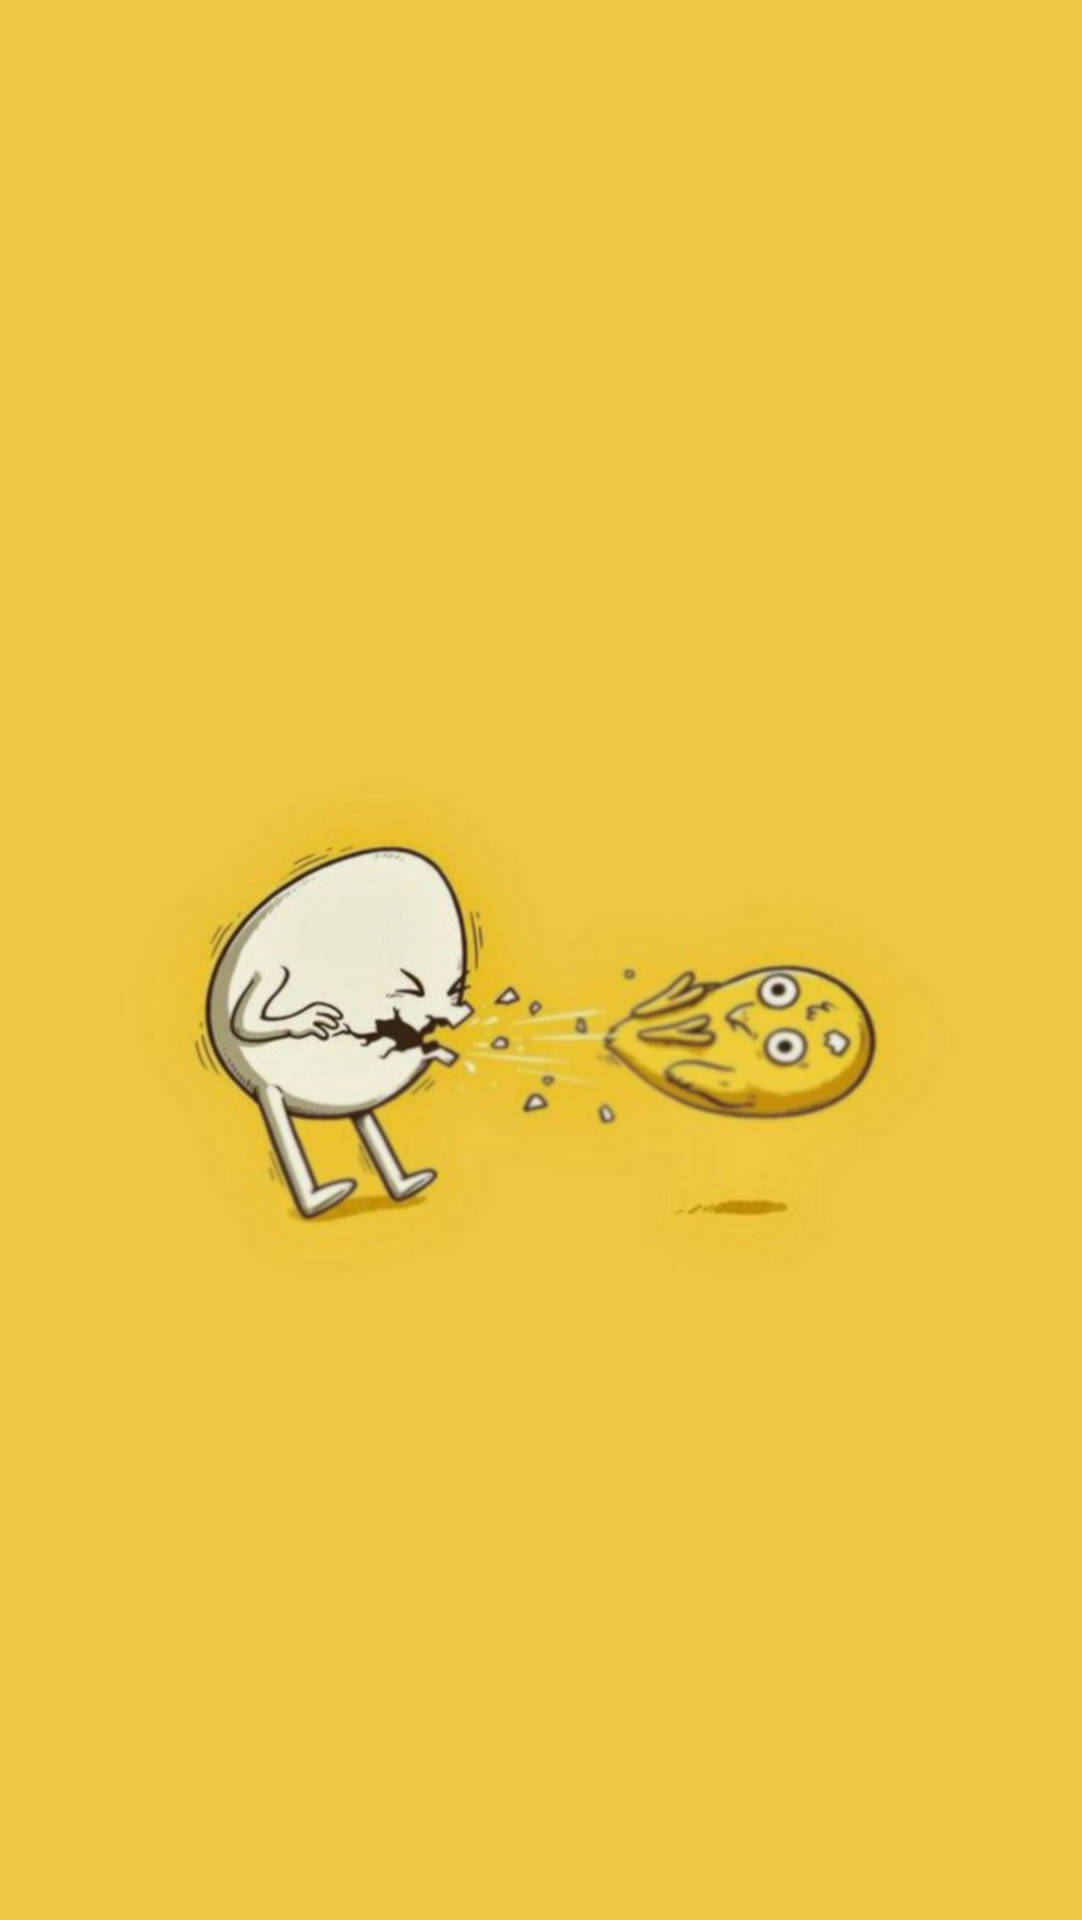 Sneezing Egg Funny Meme